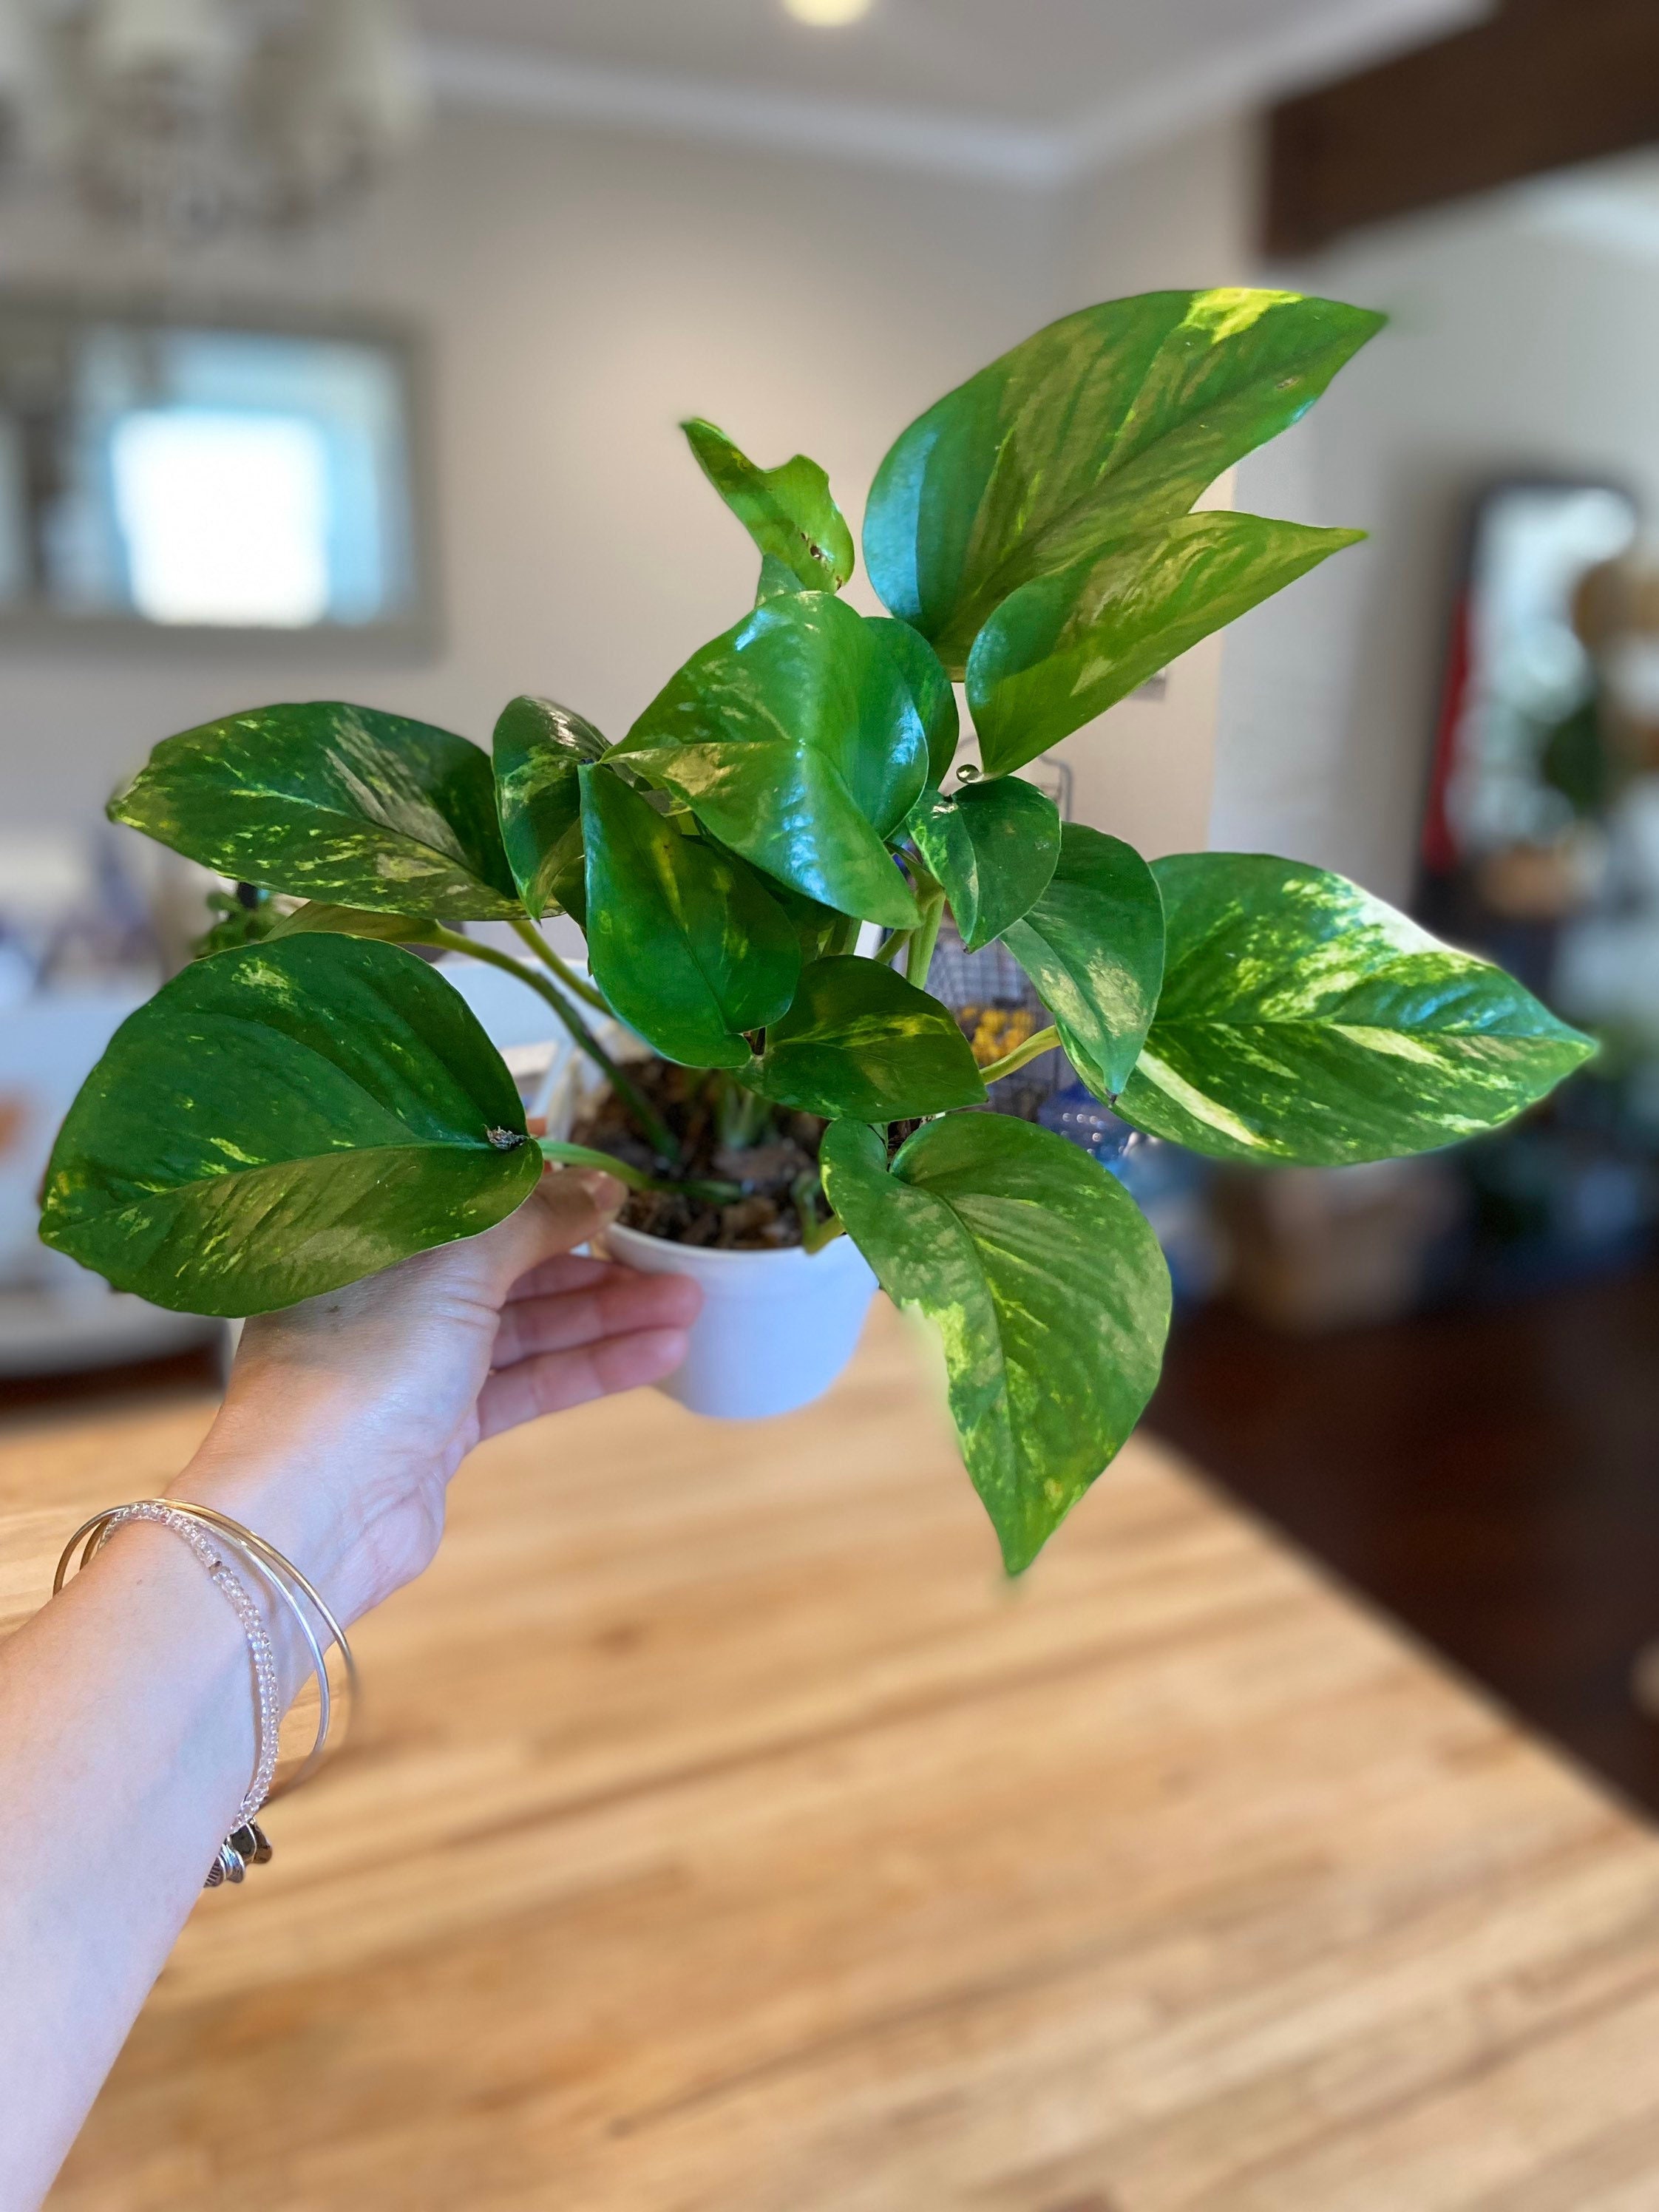 Details about   Golden Pothos fresh cuttings Devil's Ivy Epipremnum aureum  Healthy Plant 4 